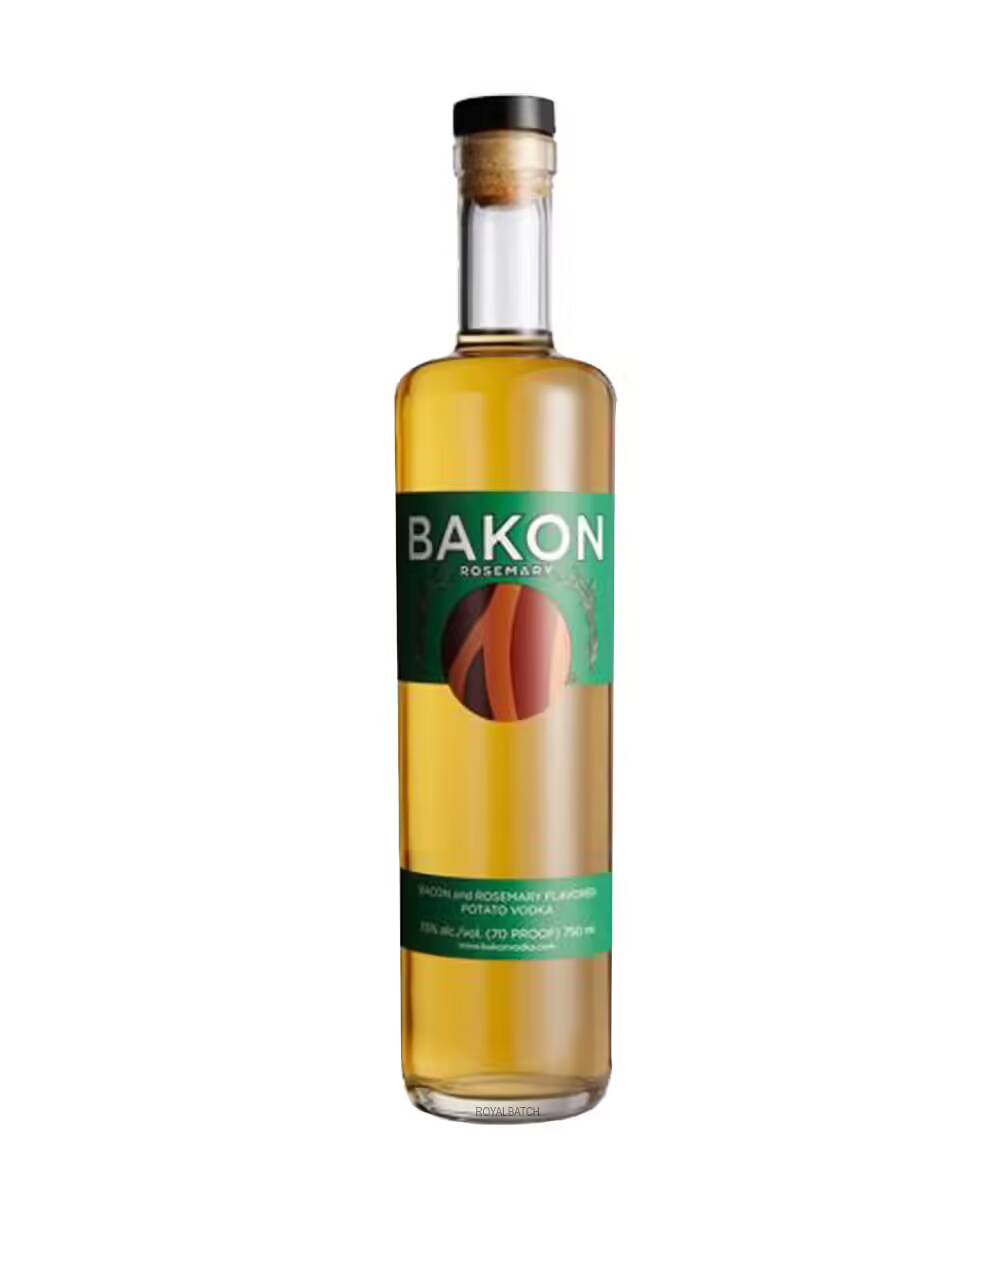 Bakon Bacon and Rosemary Flavored Potato Vodka